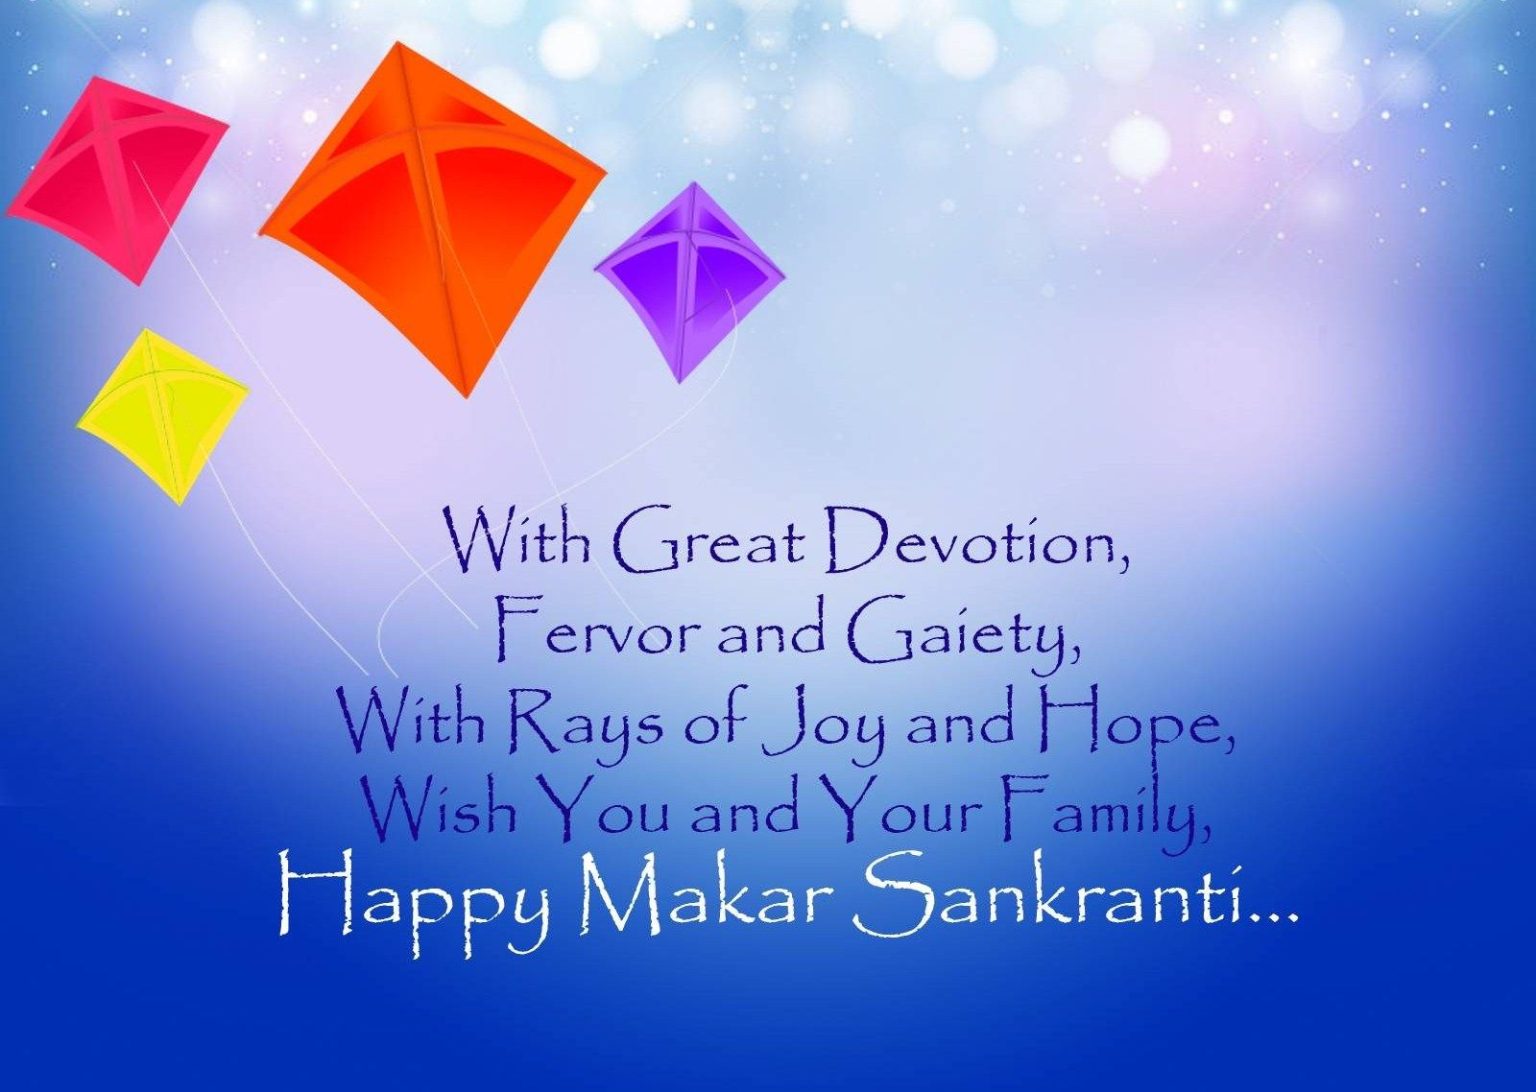 Sankranti wishes, Sankranti images, Sankranti messages, Sun transition festival, Harvest season celebration, Pongal festival, Khichdi celebration, Uttarayanan festival